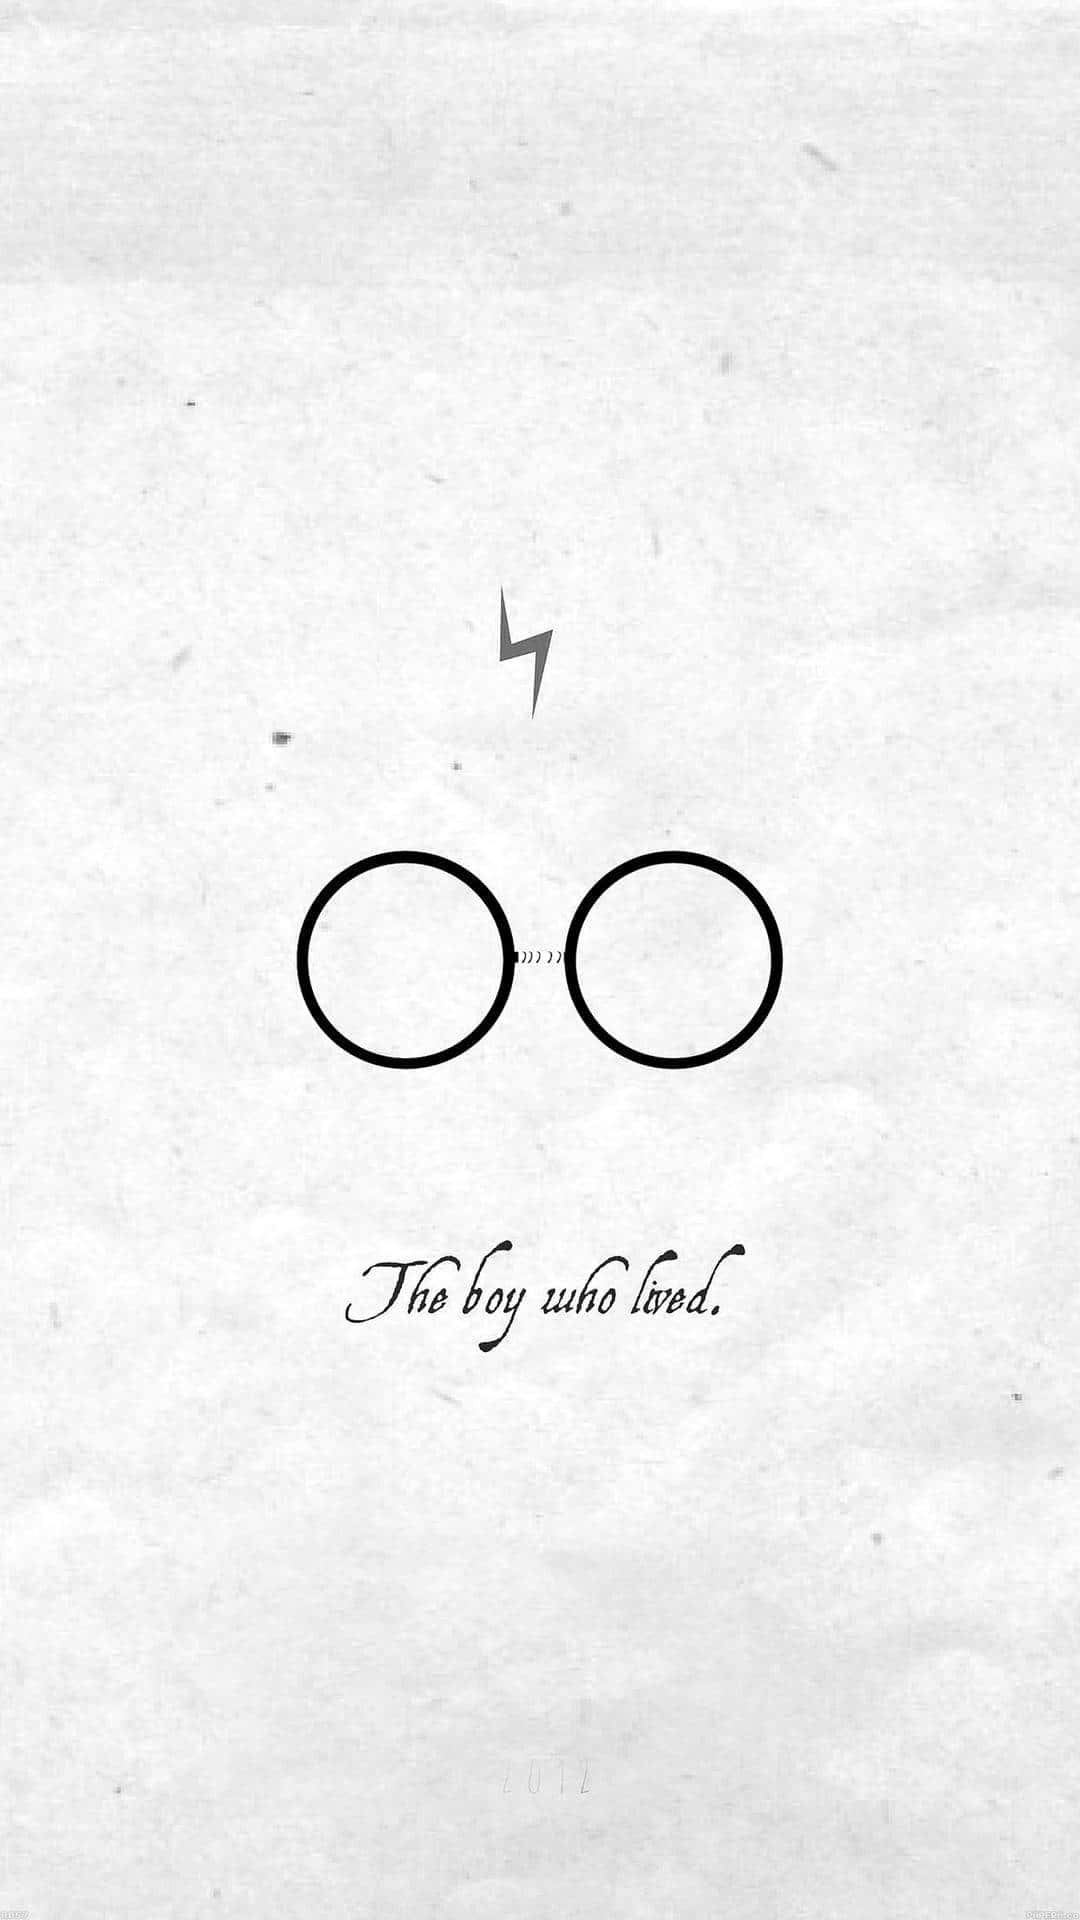 Ummomento Mágico Capturado - Harry Potter Em Preto E Branco. Papel de Parede